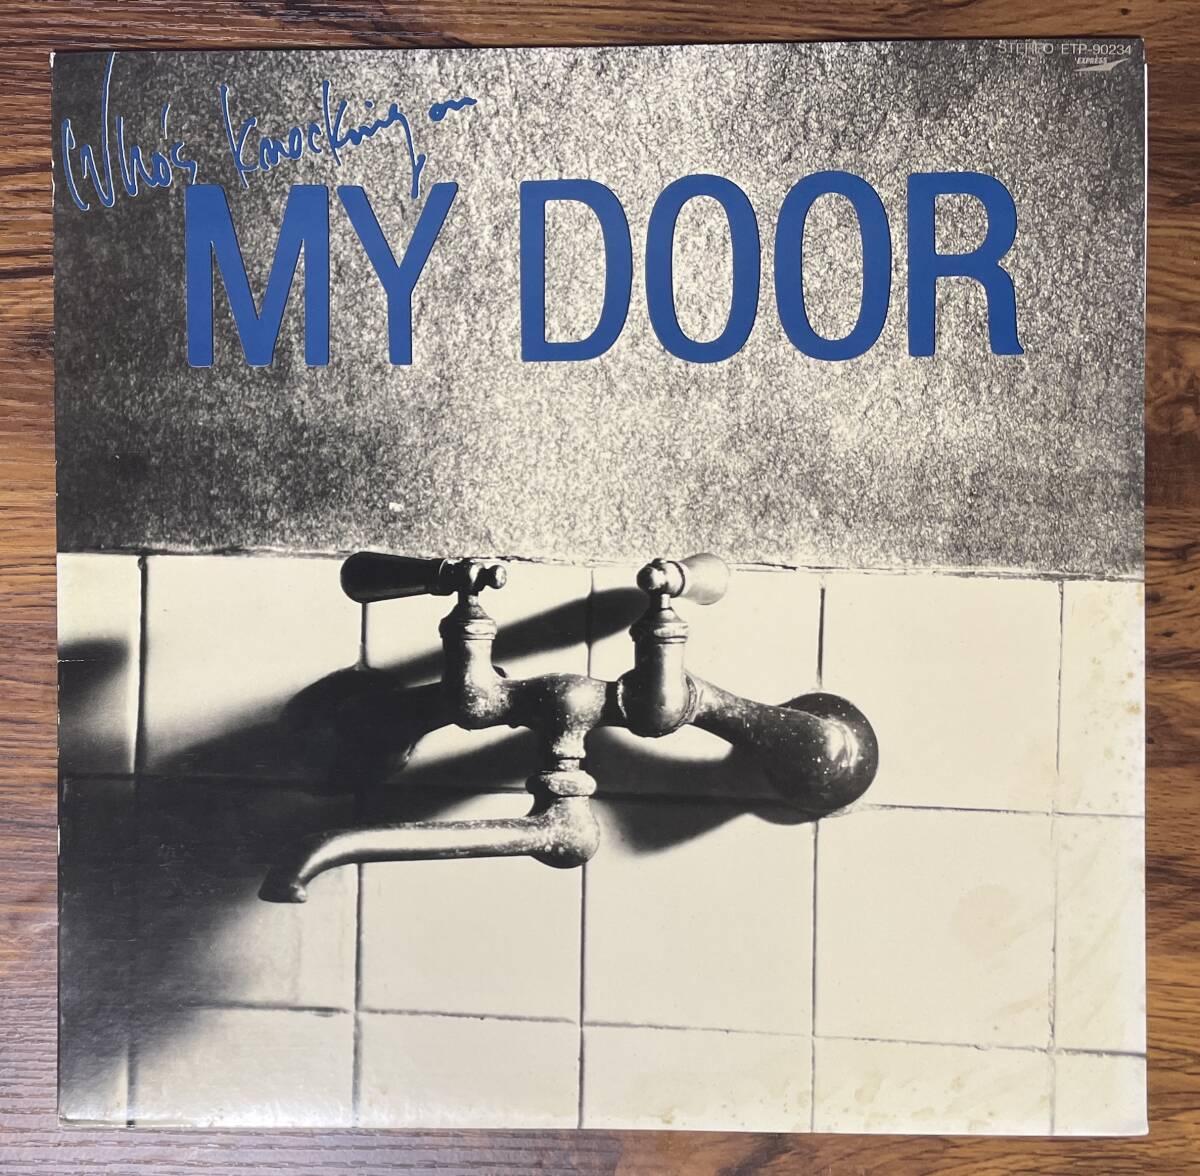 浅川マキ / Who's Knocking On My Door LP ETP-90234 寺山修司 和モノ ニューウェーブの画像1